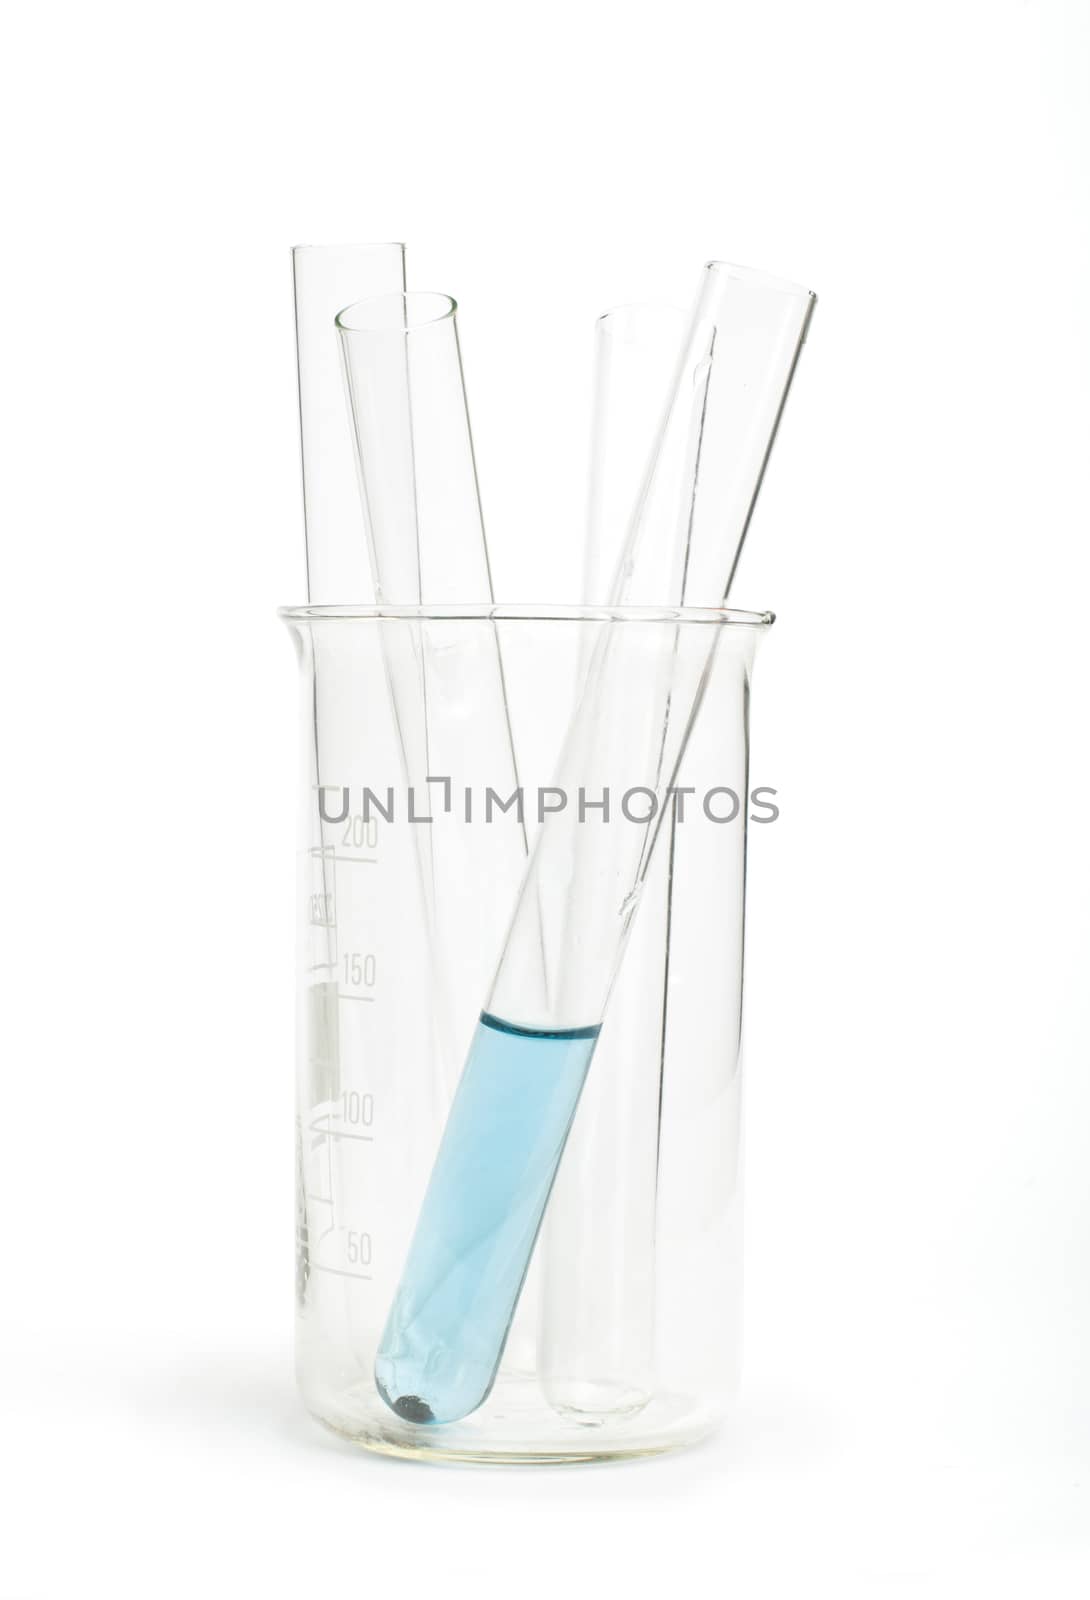 Laboratory glassware equipment. Laboratory beakers and tubes